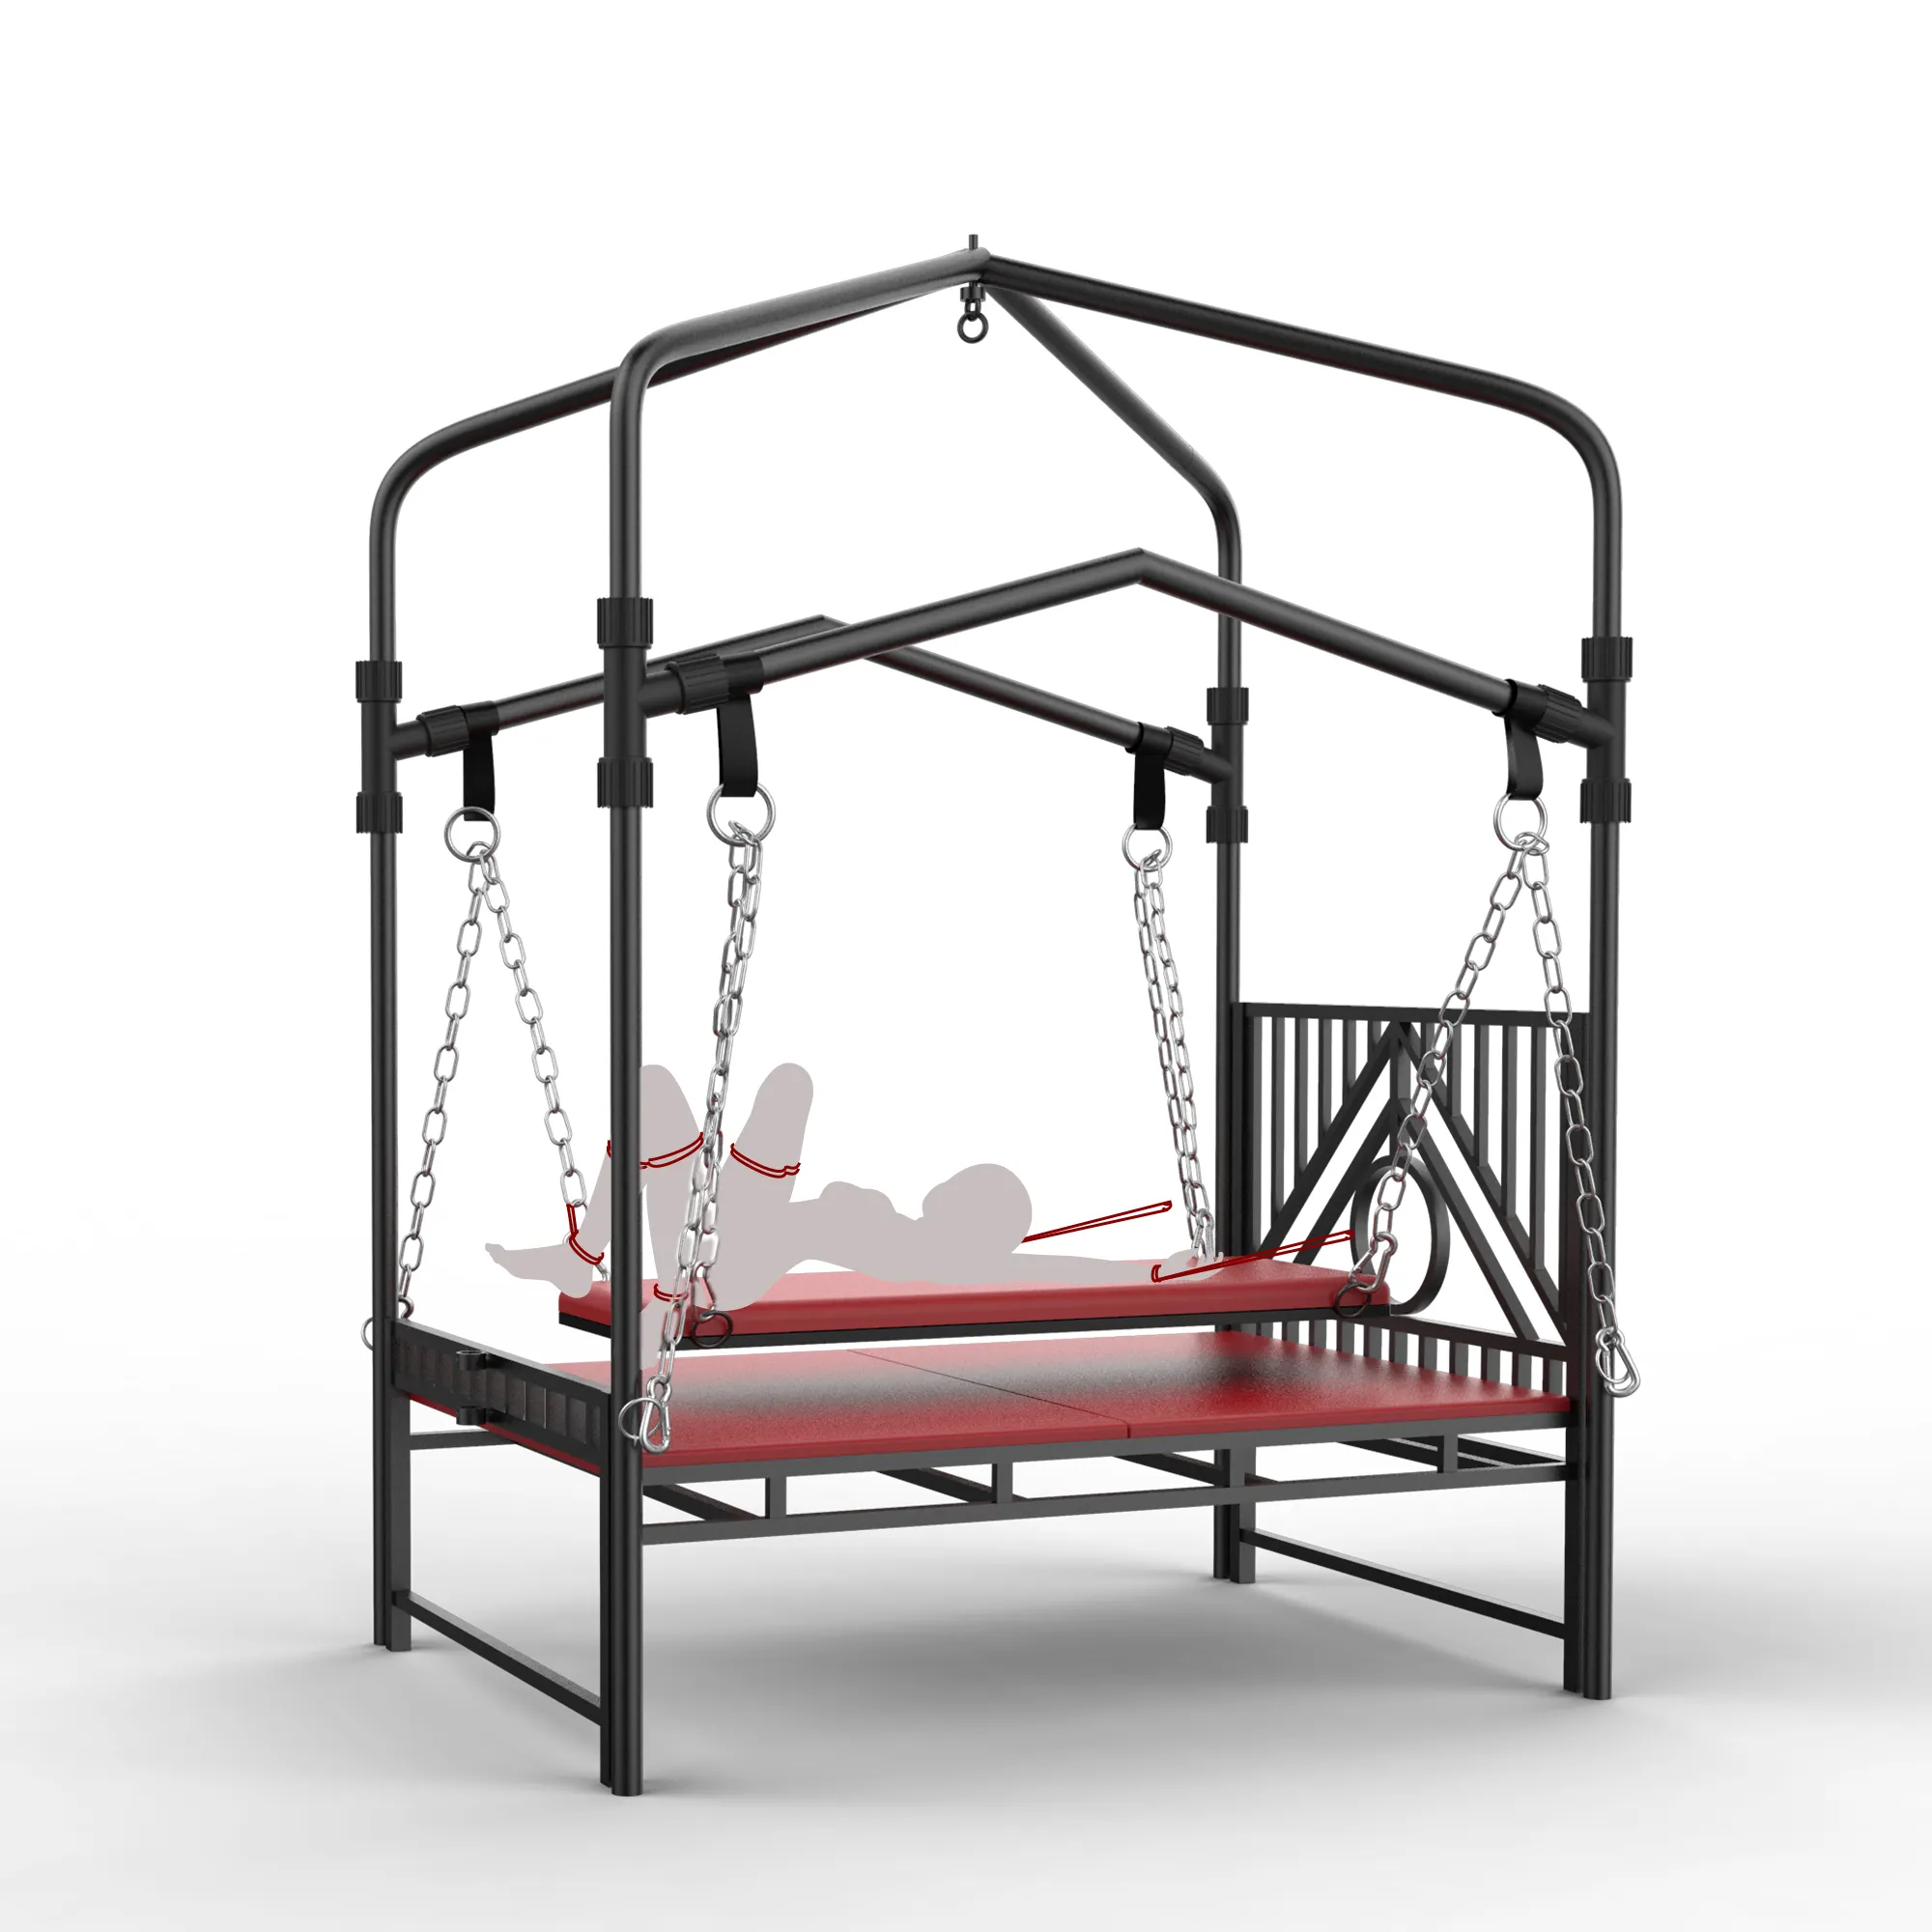 Meubles de lit SM, chaise de Position sexuelle pour faire l'amour, canapé donjon, jouet érotique